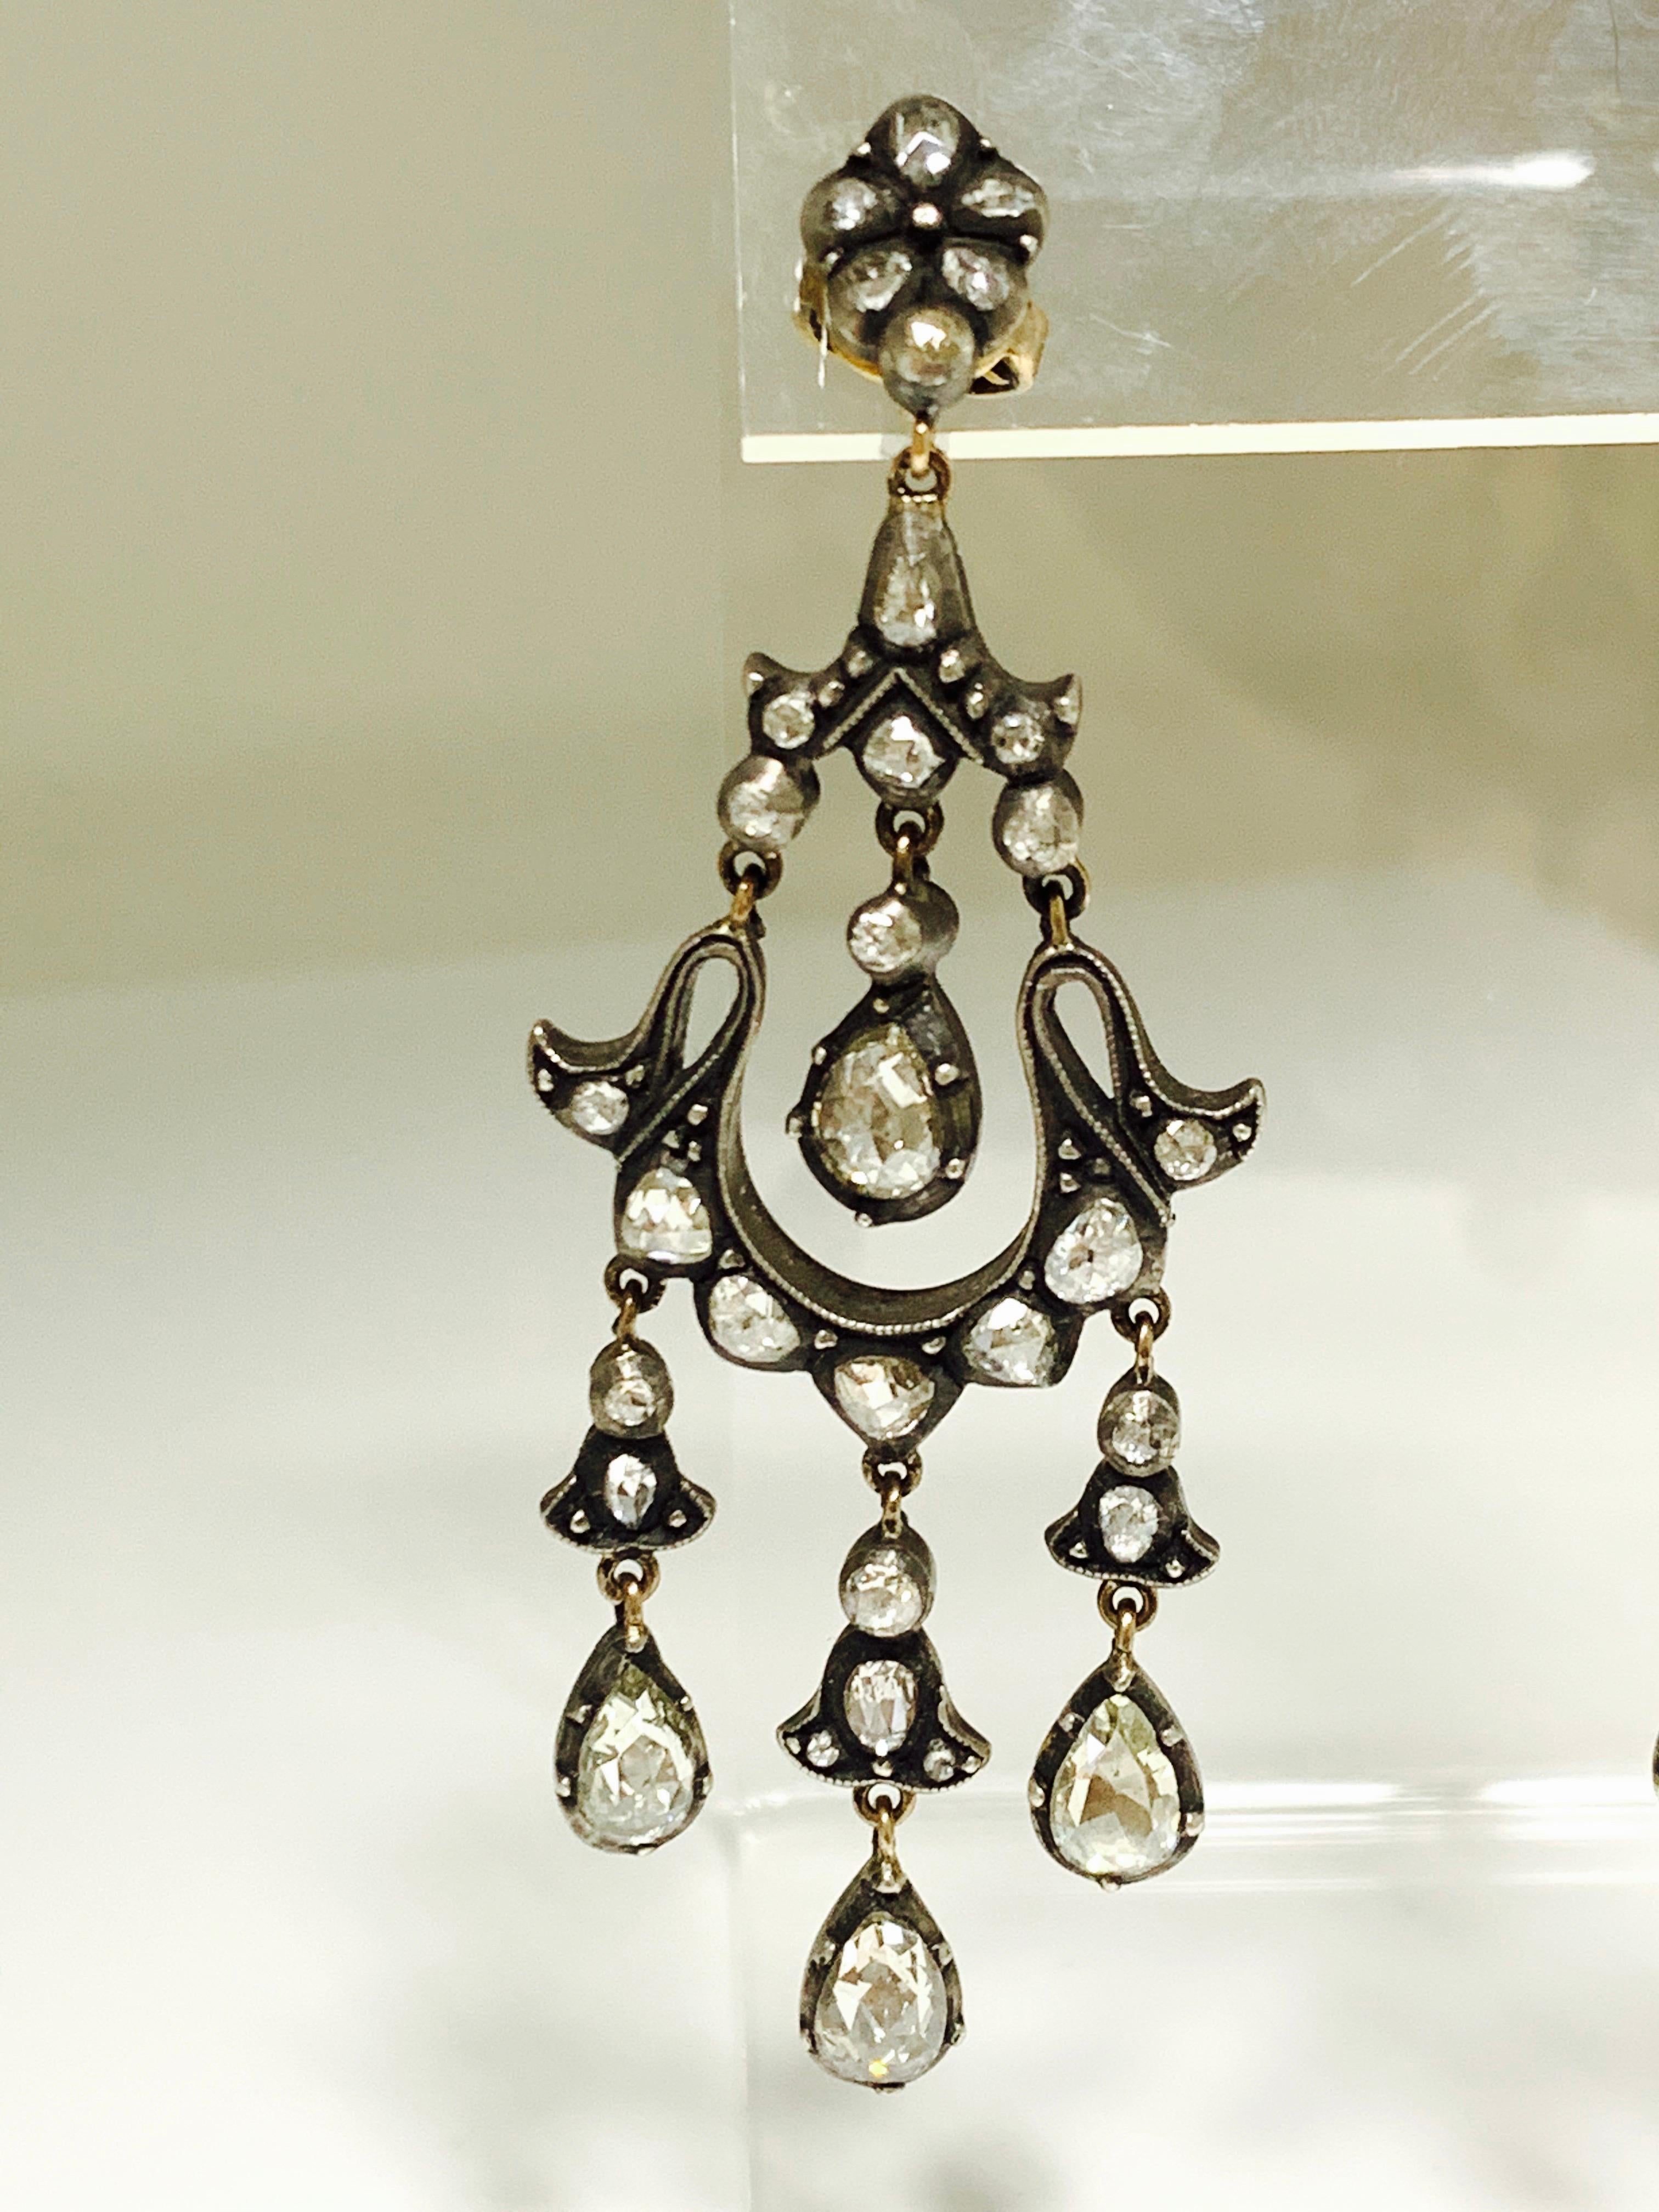 6 Carat Rose Cut Diamond Antique Style Chandelier Earrings in 18 Karat Gold For Sale 2